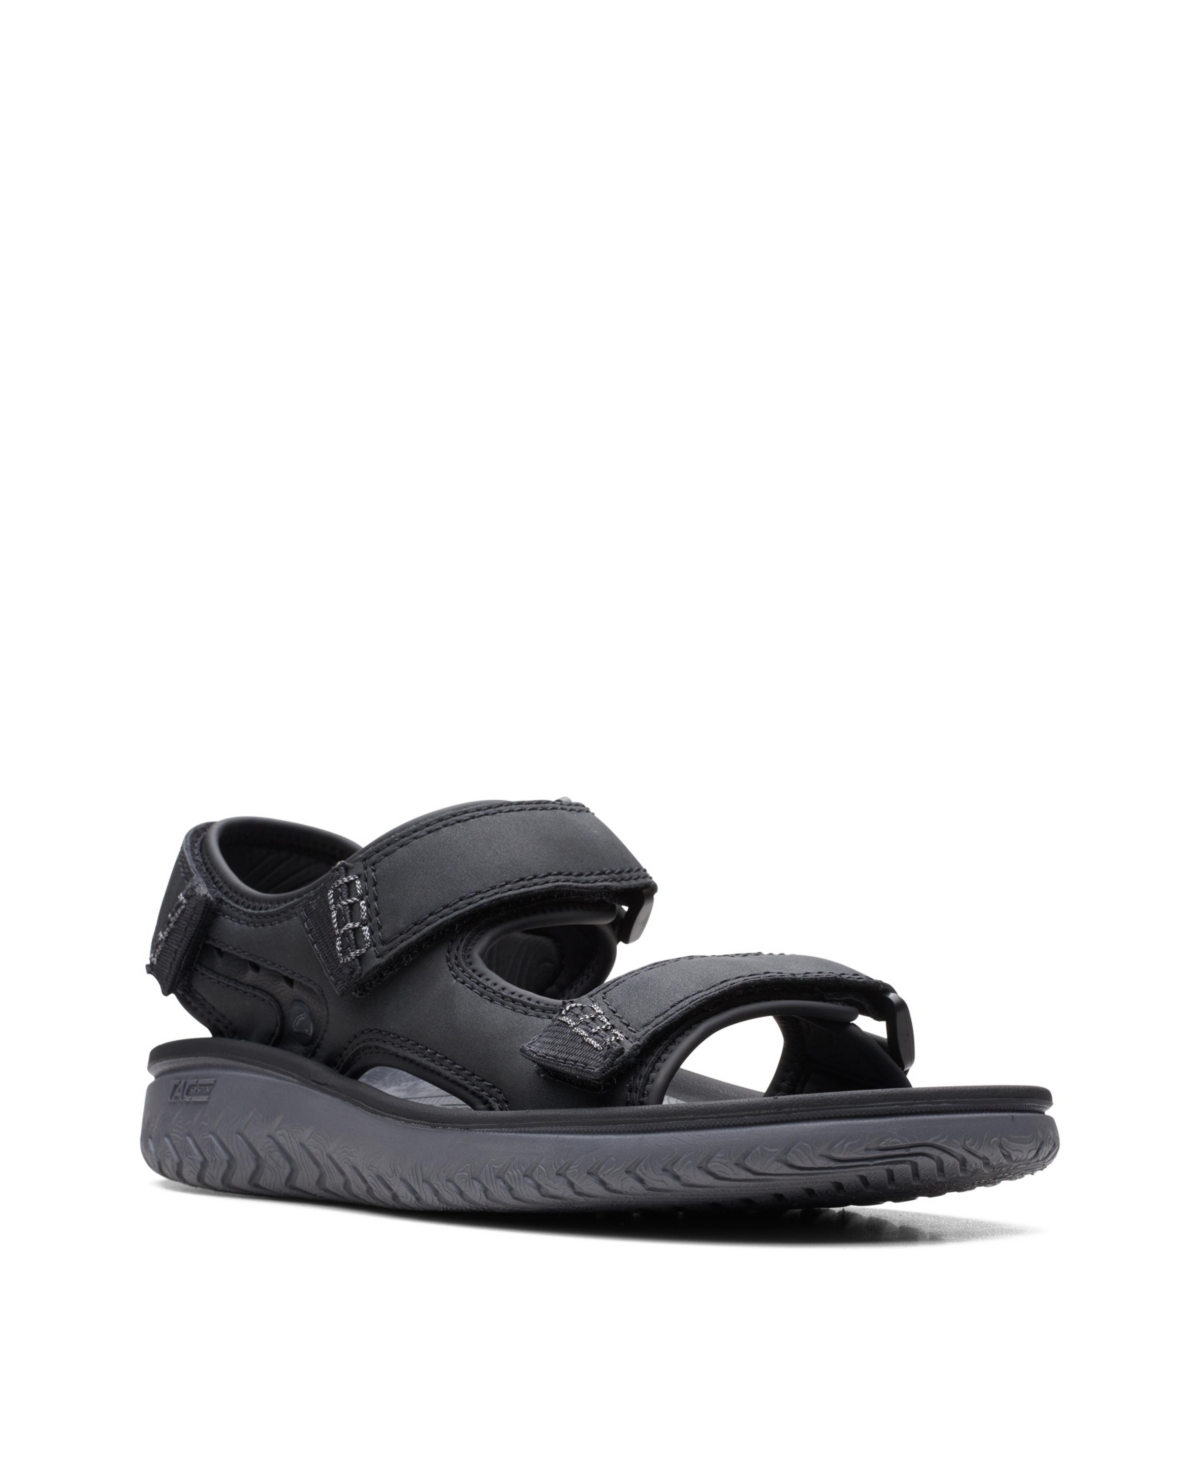 Men's Wesley Bay Sandals - Black